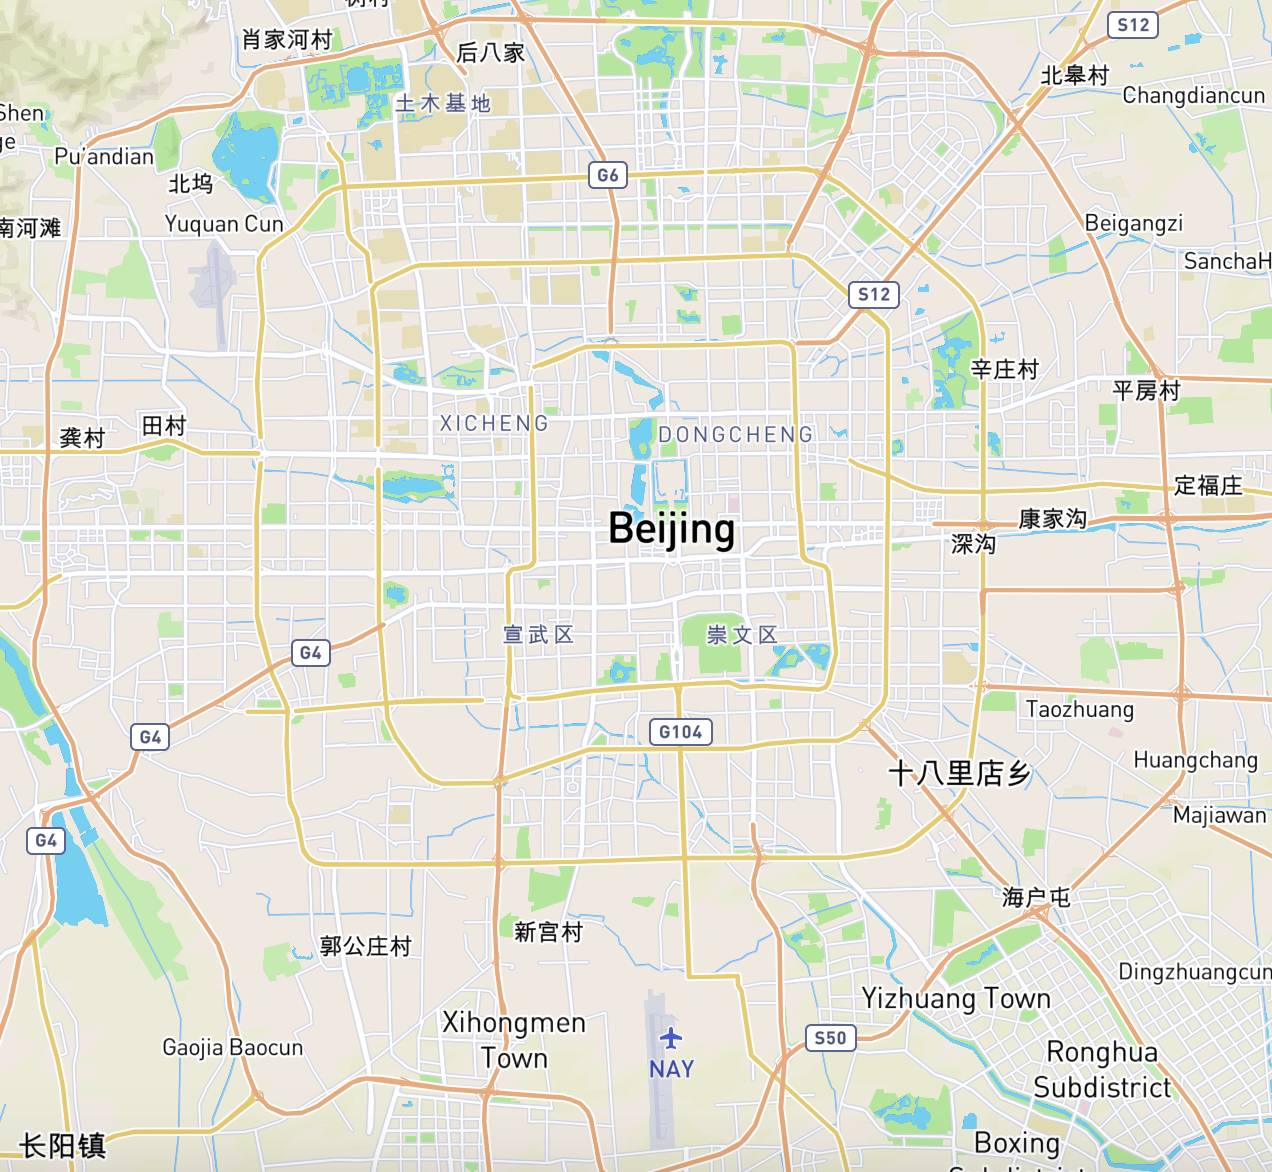 横平竖直:北方绝大部分平原城市,代表城市是北京: 北京主干道地图图片